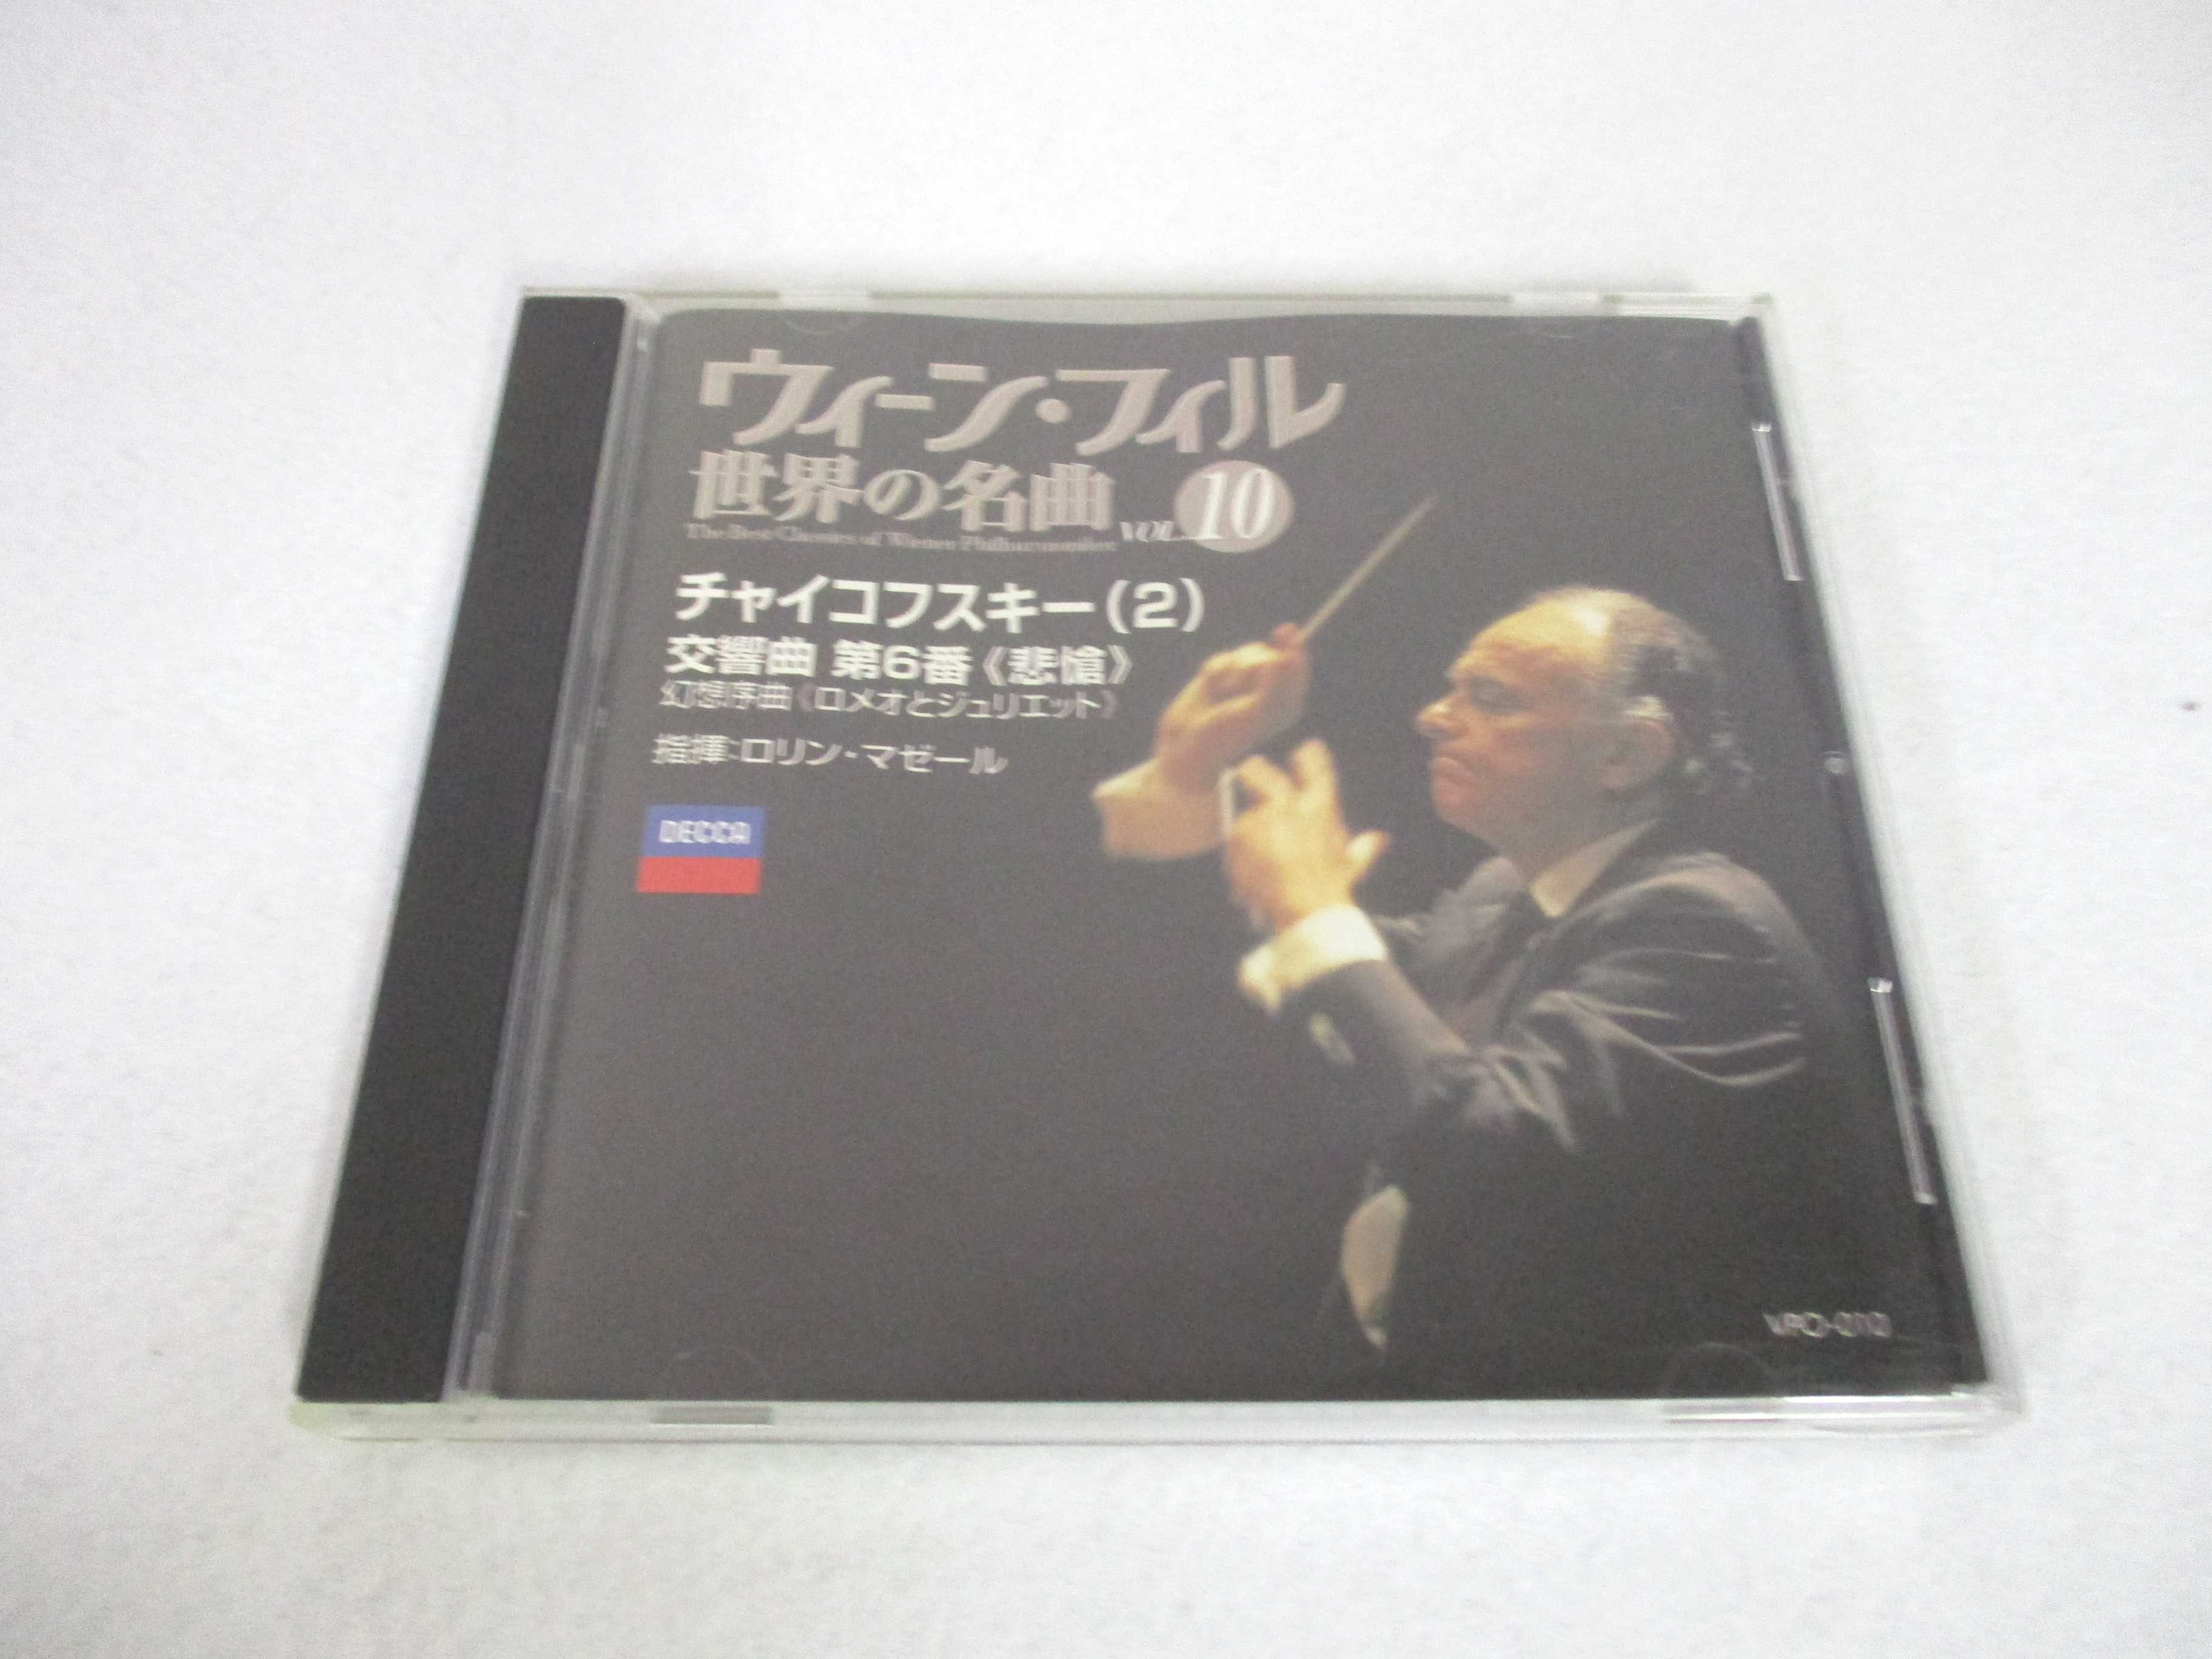 AC06255【中古】 【CD】 ウィーン・フィル 世界の名曲 VOL.10 チャイコフスキー(2)